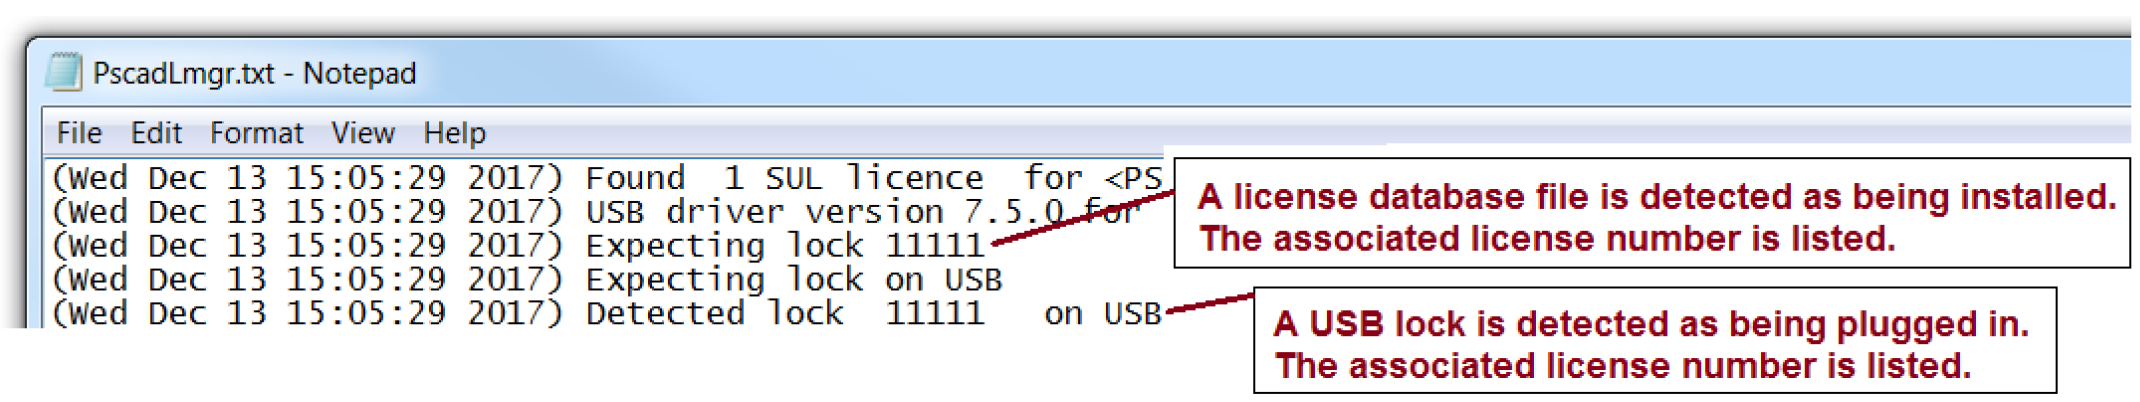 PscadLmgr.txt File - Detecting License Number.png (212 KB)